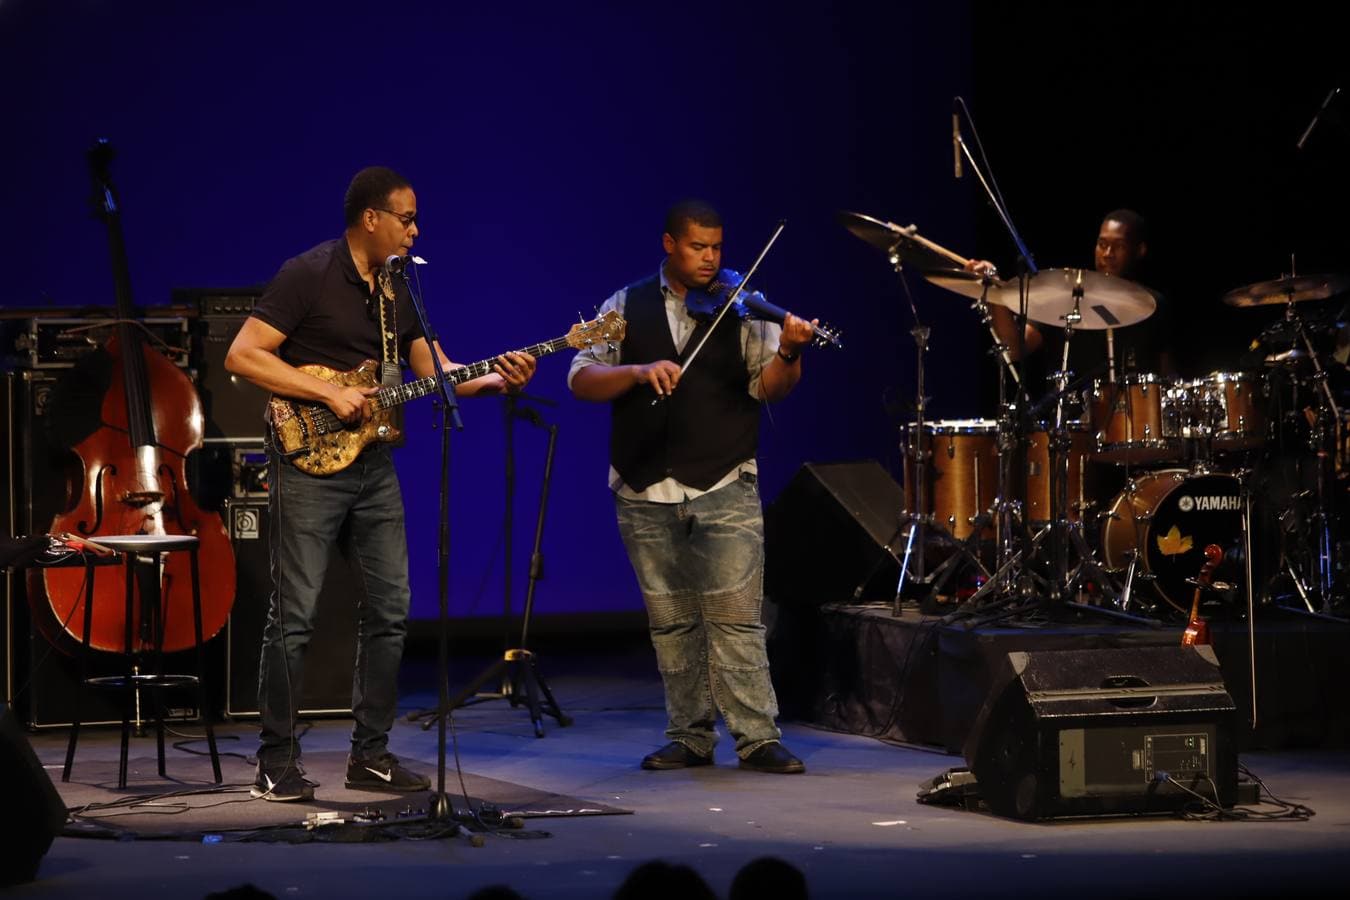 Festival de la Guitarra de Córdoba: el bajo mágico de Stanley Clarke